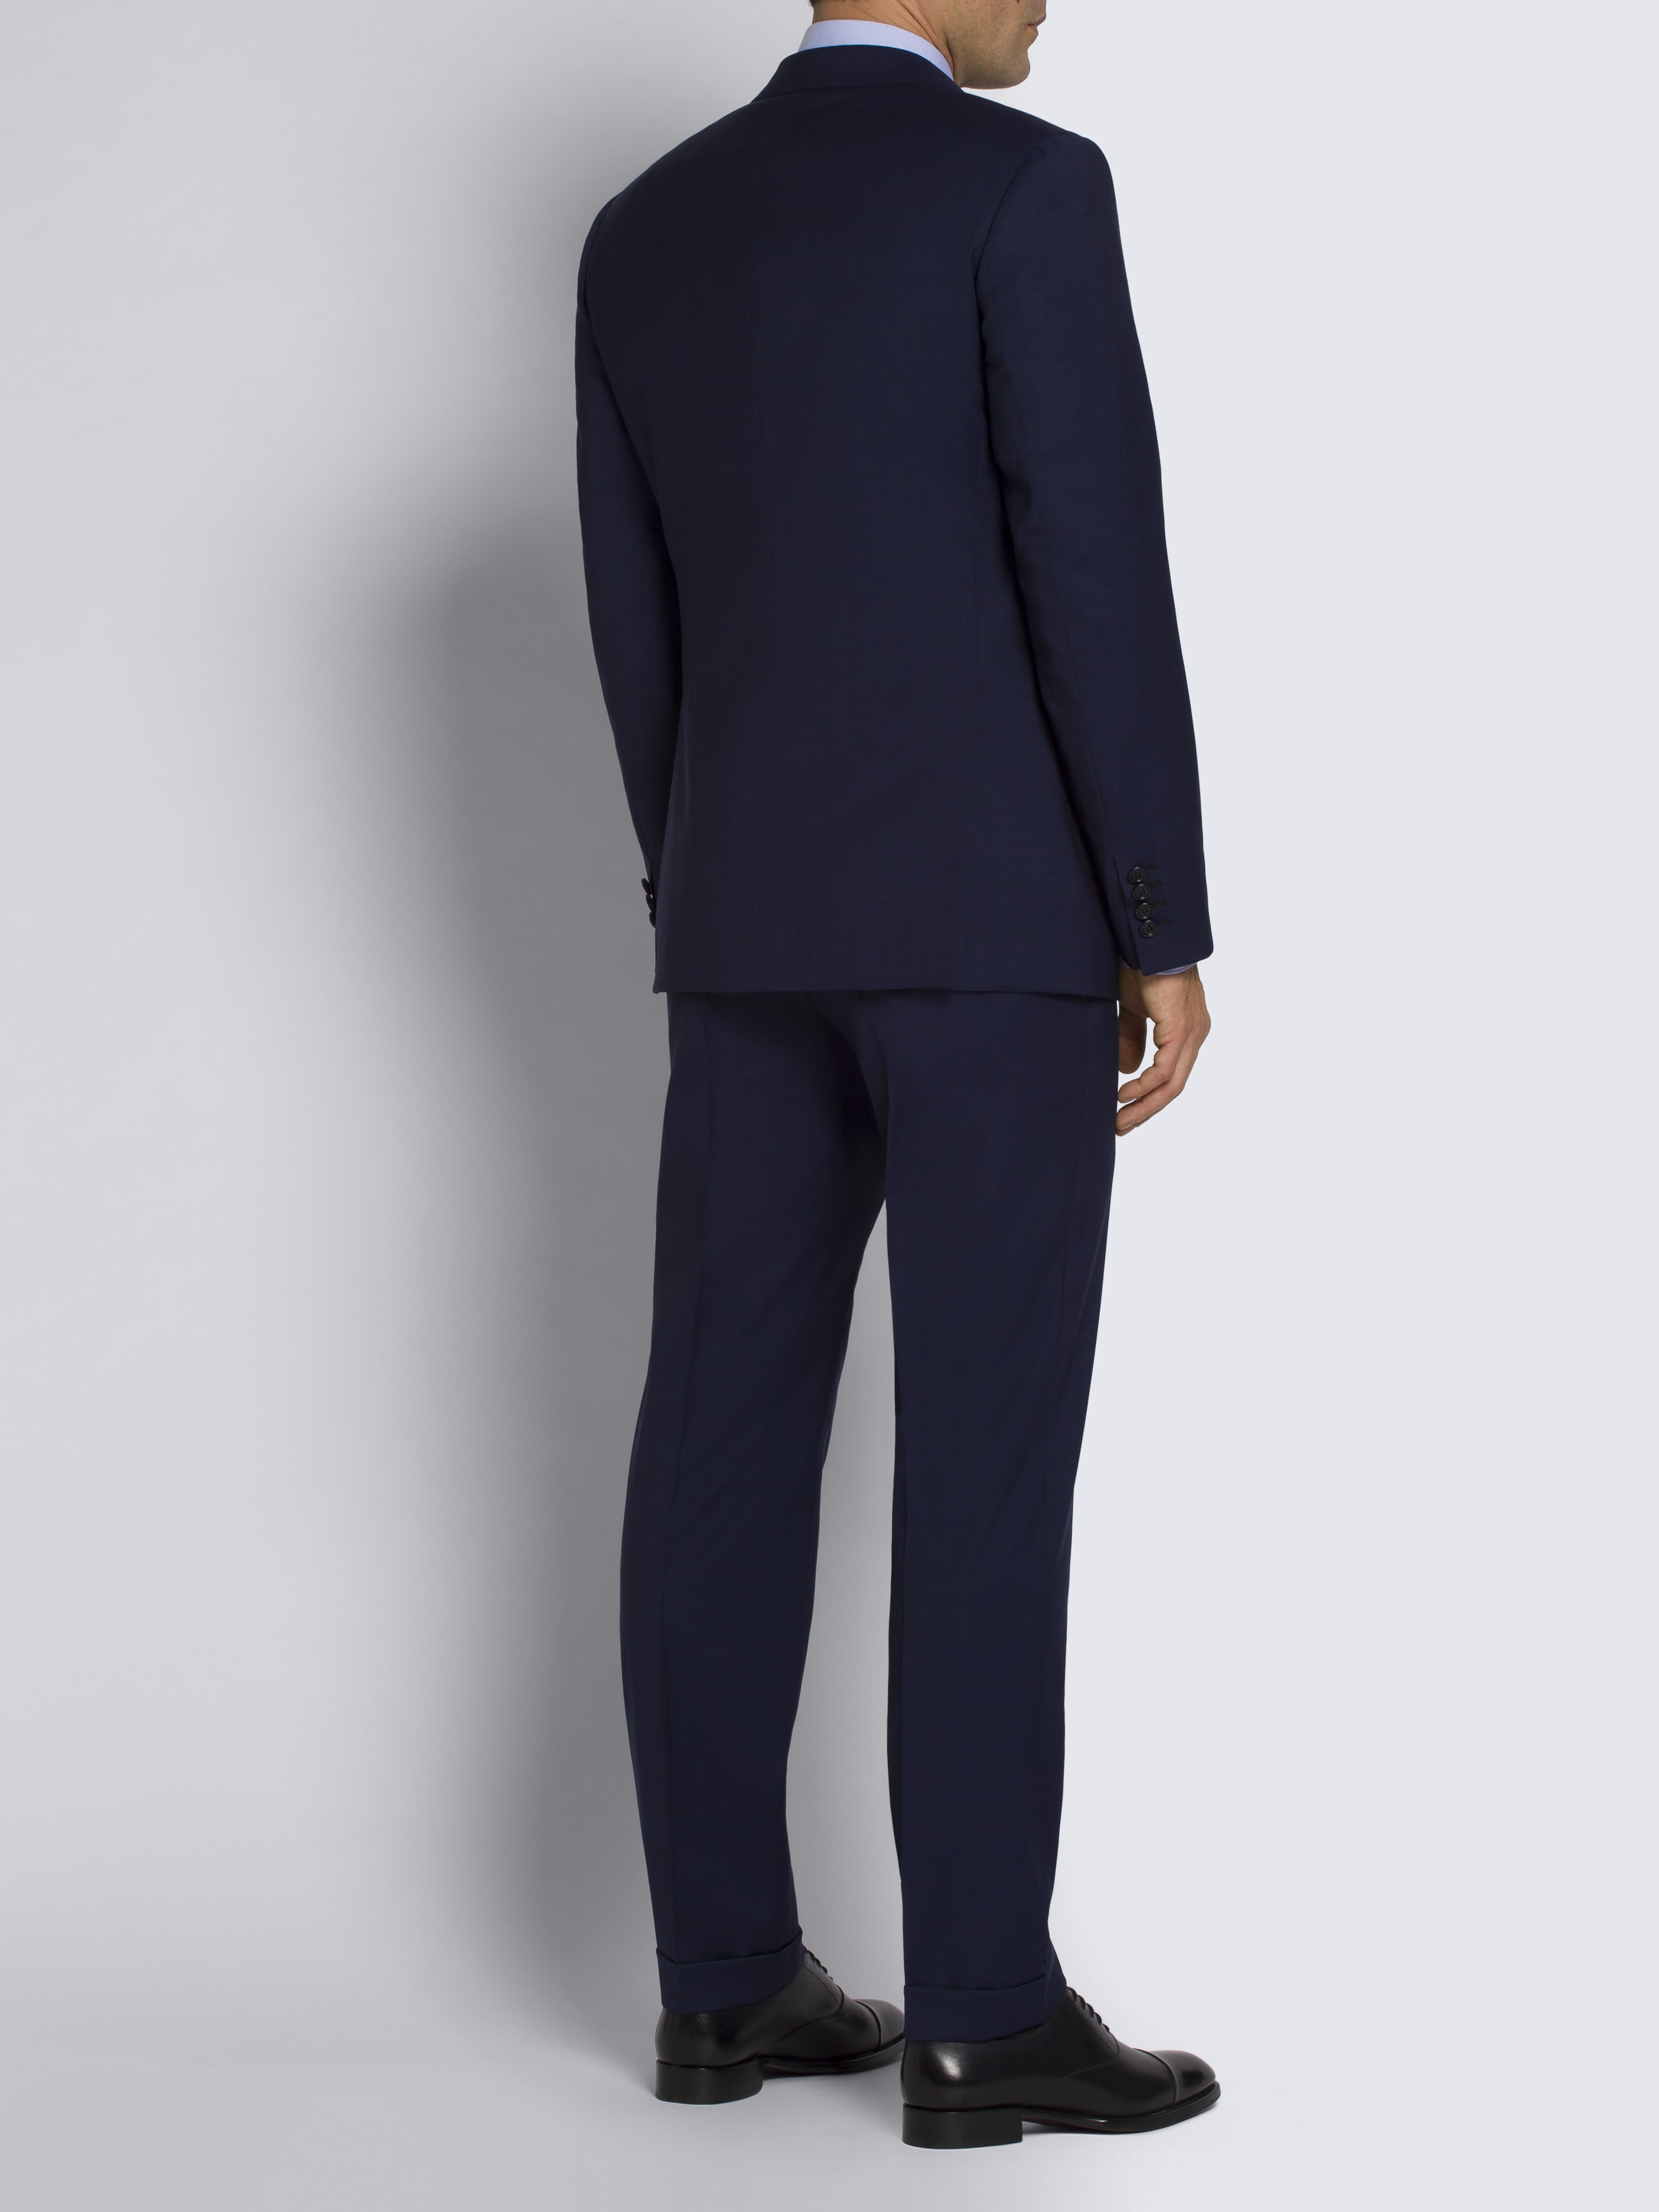 Royal blue Pre-Couture Ventiquattro suit